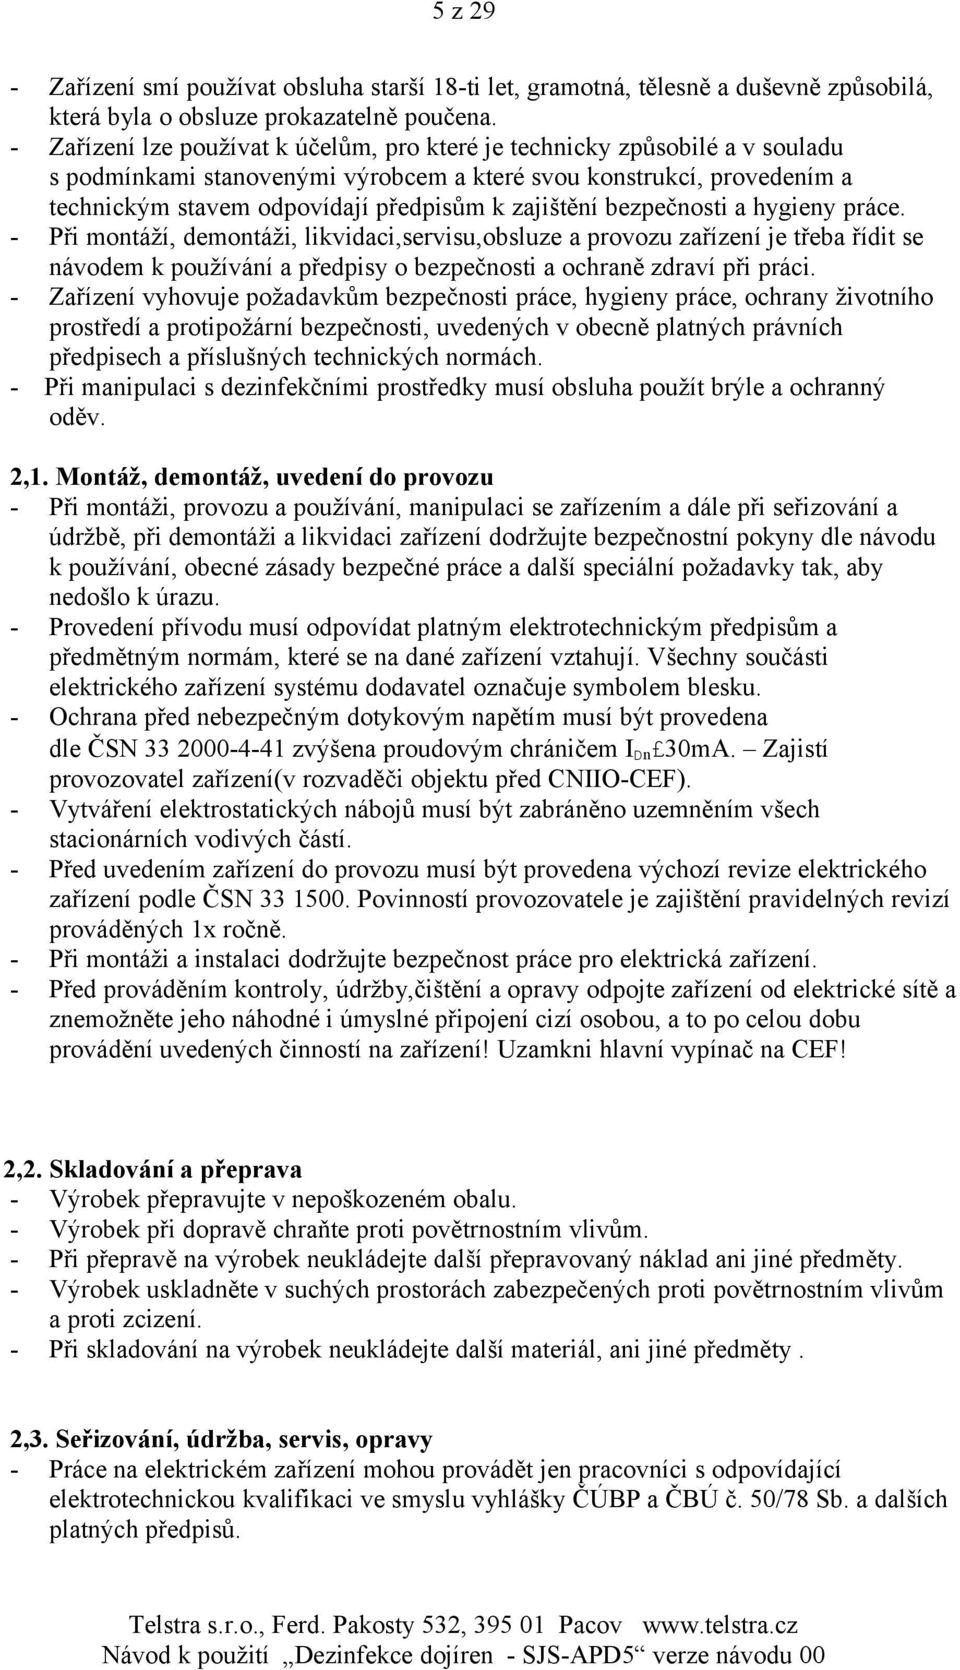 Zařízení pro dezinfekci dojíren APD5 - PDF Free Download